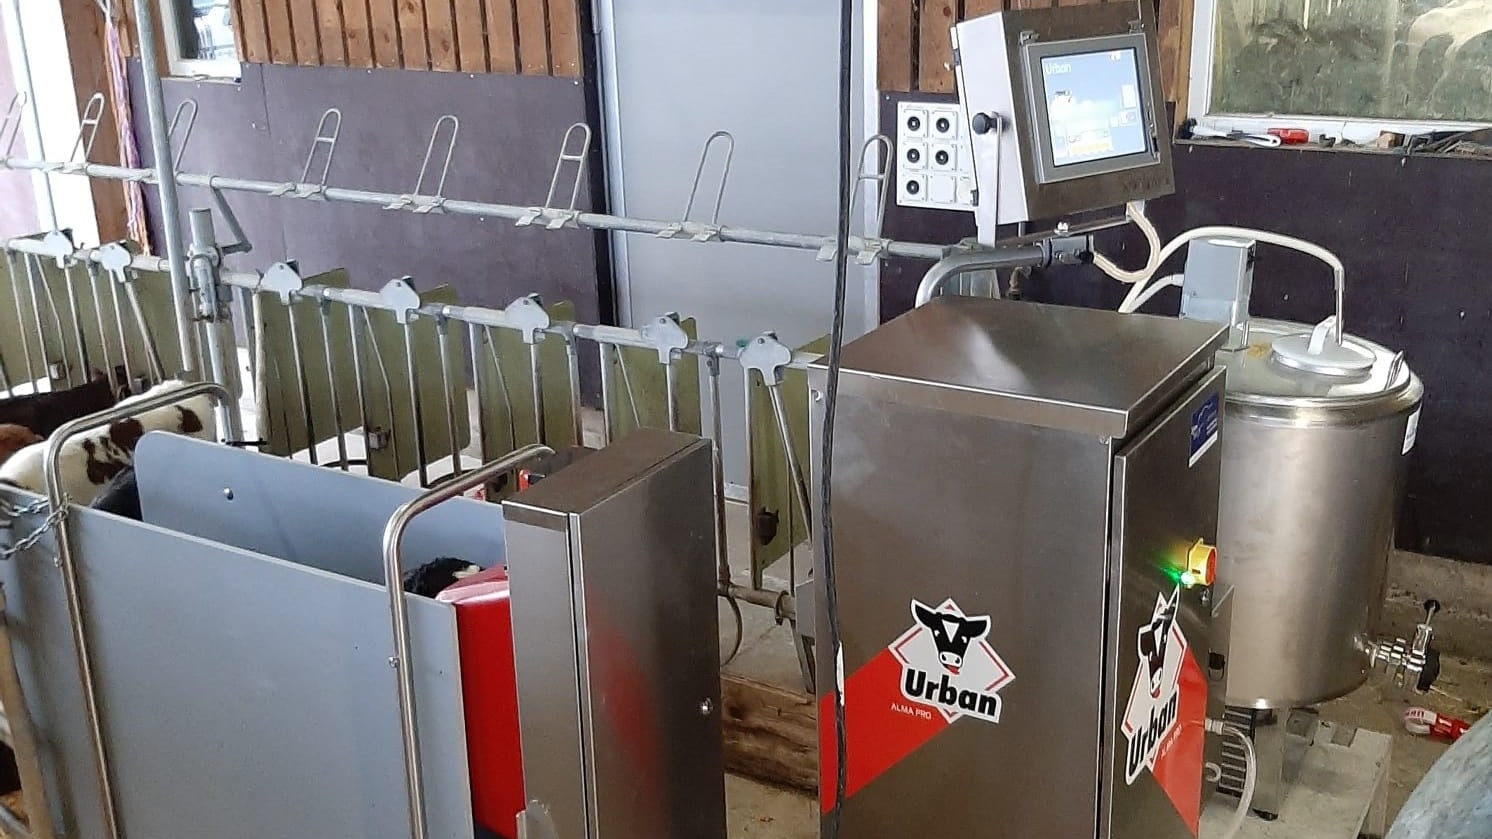 Urban-AlmaPro Tränkautomat mit 12'' Display: Für maximale Überwachung der Kälbergesundheit.